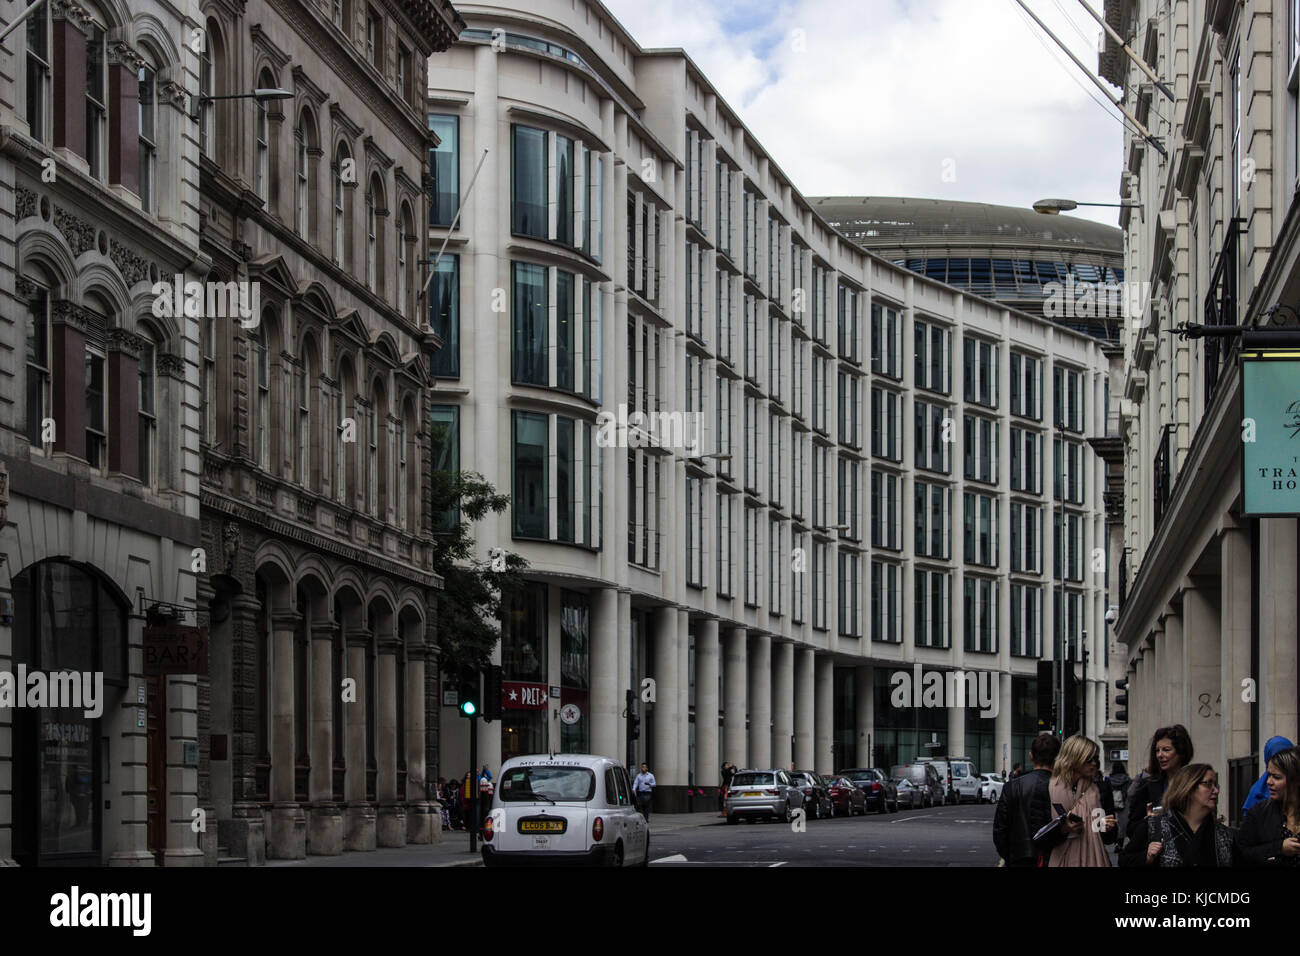 20 Gresham Street Gebäude, mit einem ungewöhnlichen Design und geschwungene Fassade sehen wir einen Kontrast zwischen Moderne und alte Architektur, liebe dieses Pic:) Stockfoto